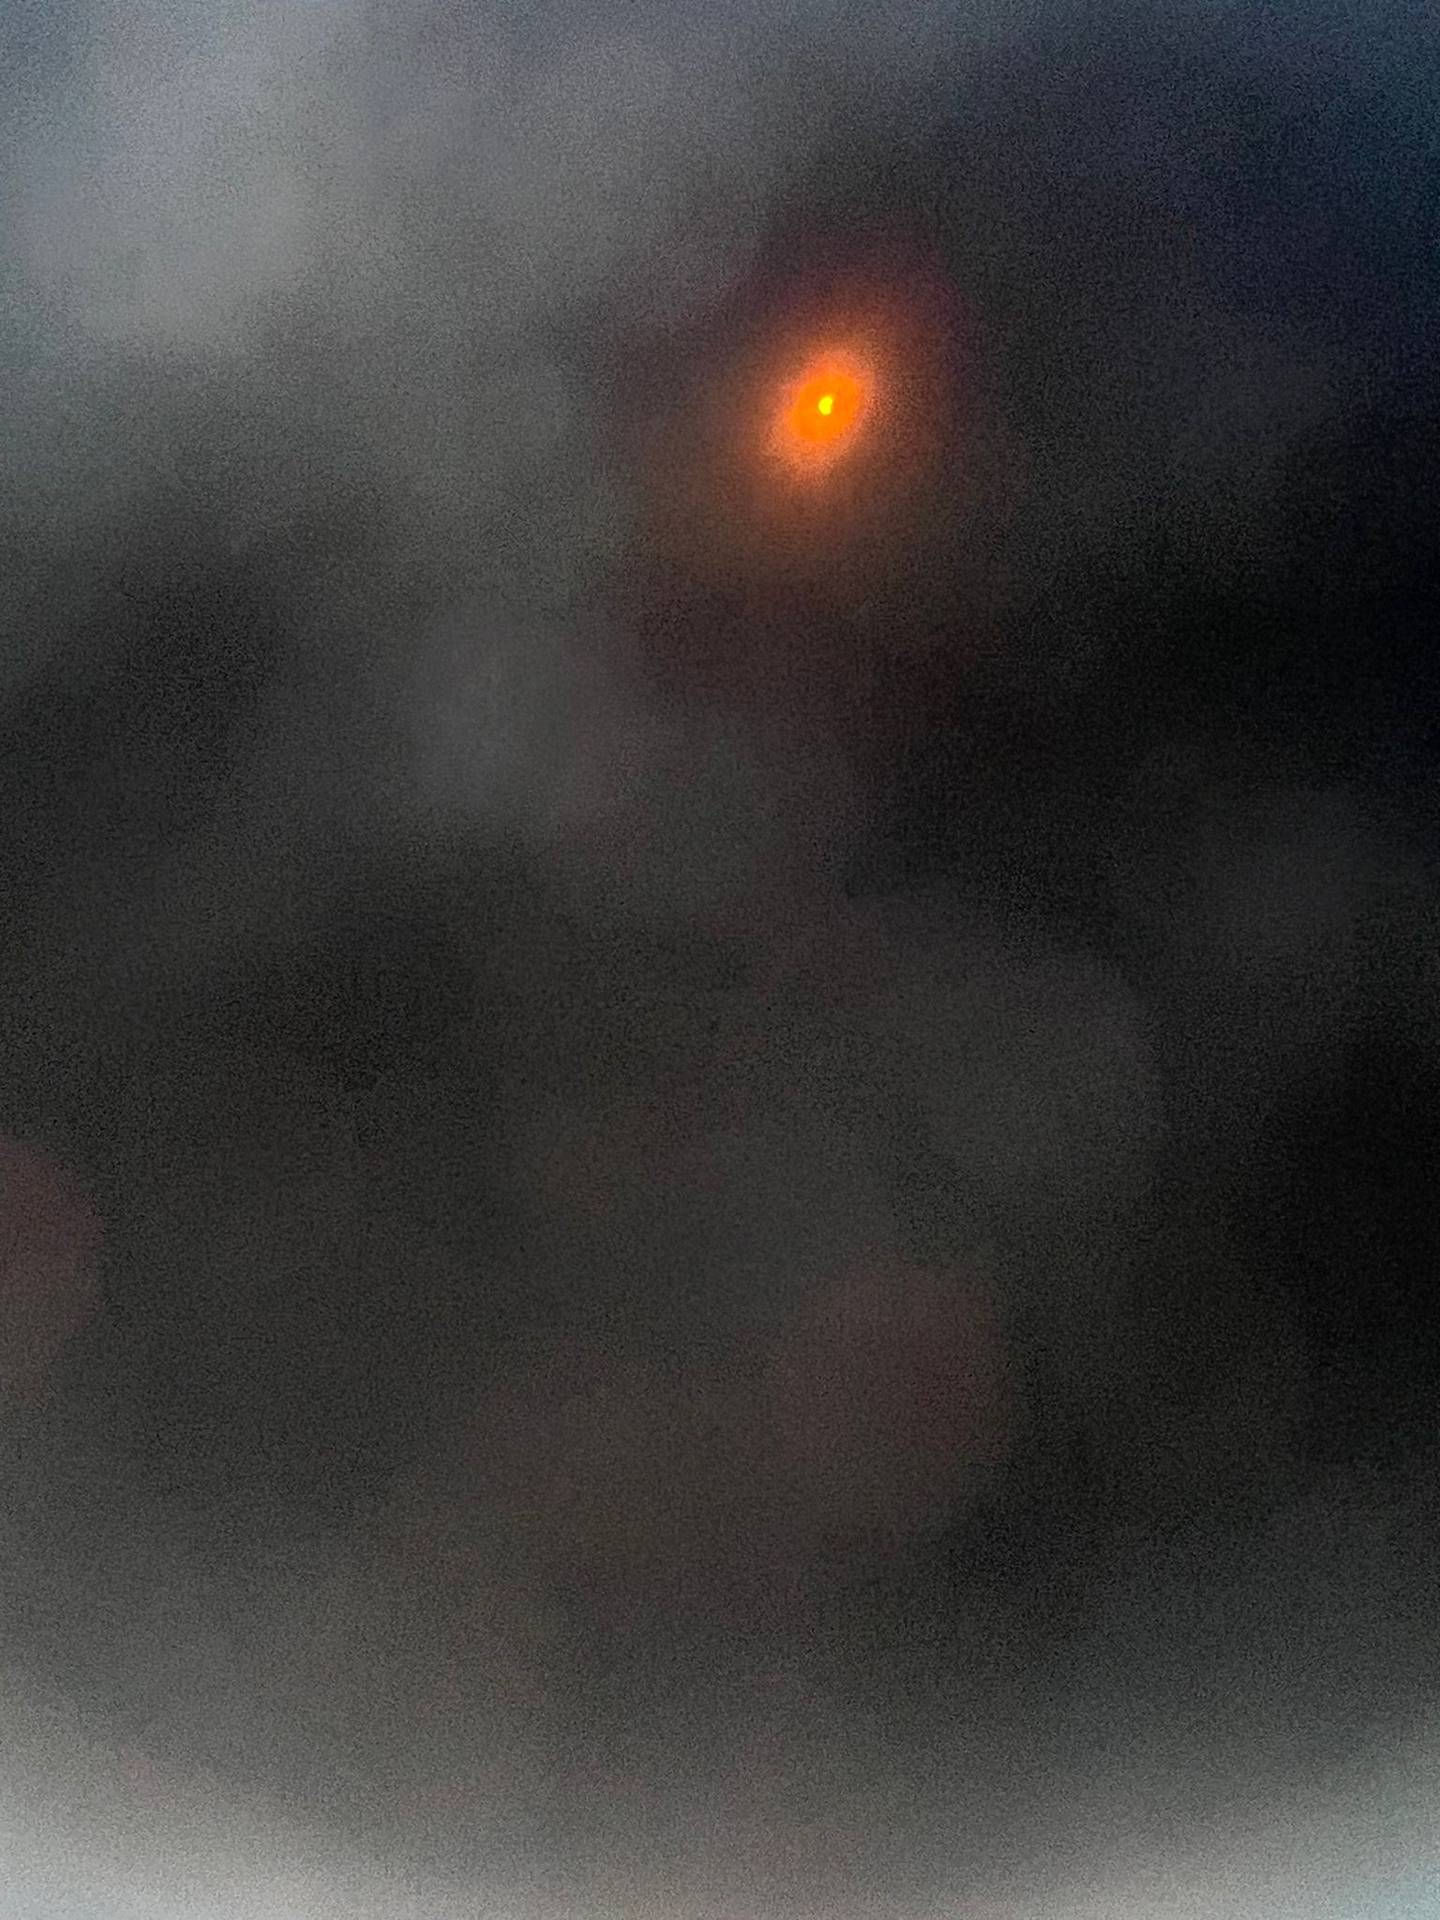 Inicio del eclipse en Texas, Tara Key tomó esta fotografía con su celular, usando los lentes especiales.